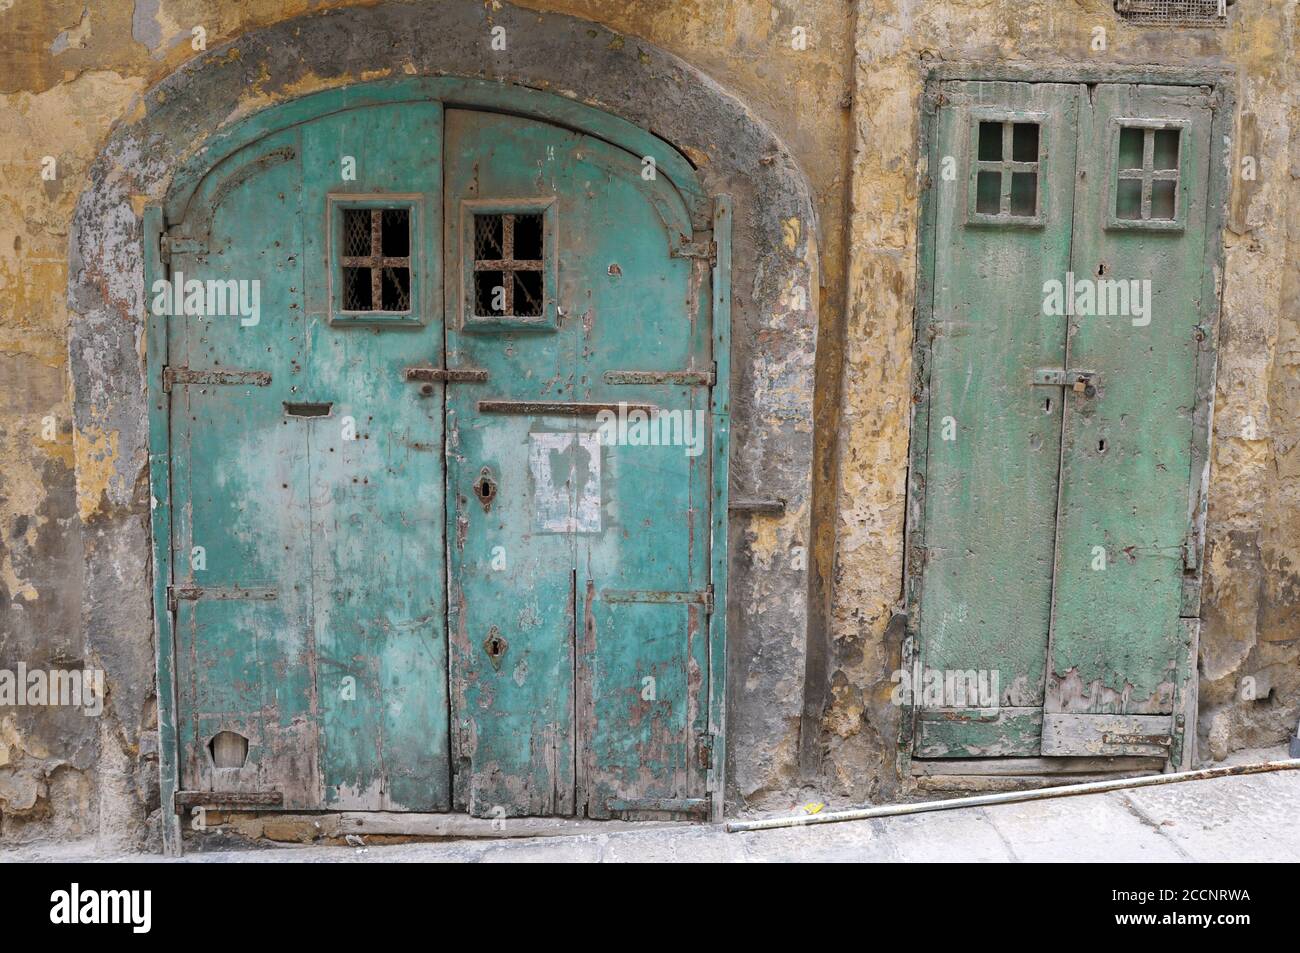 Vieilles portes abîmés sur un bâtiment de la Valette, Malte. Banque D'Images